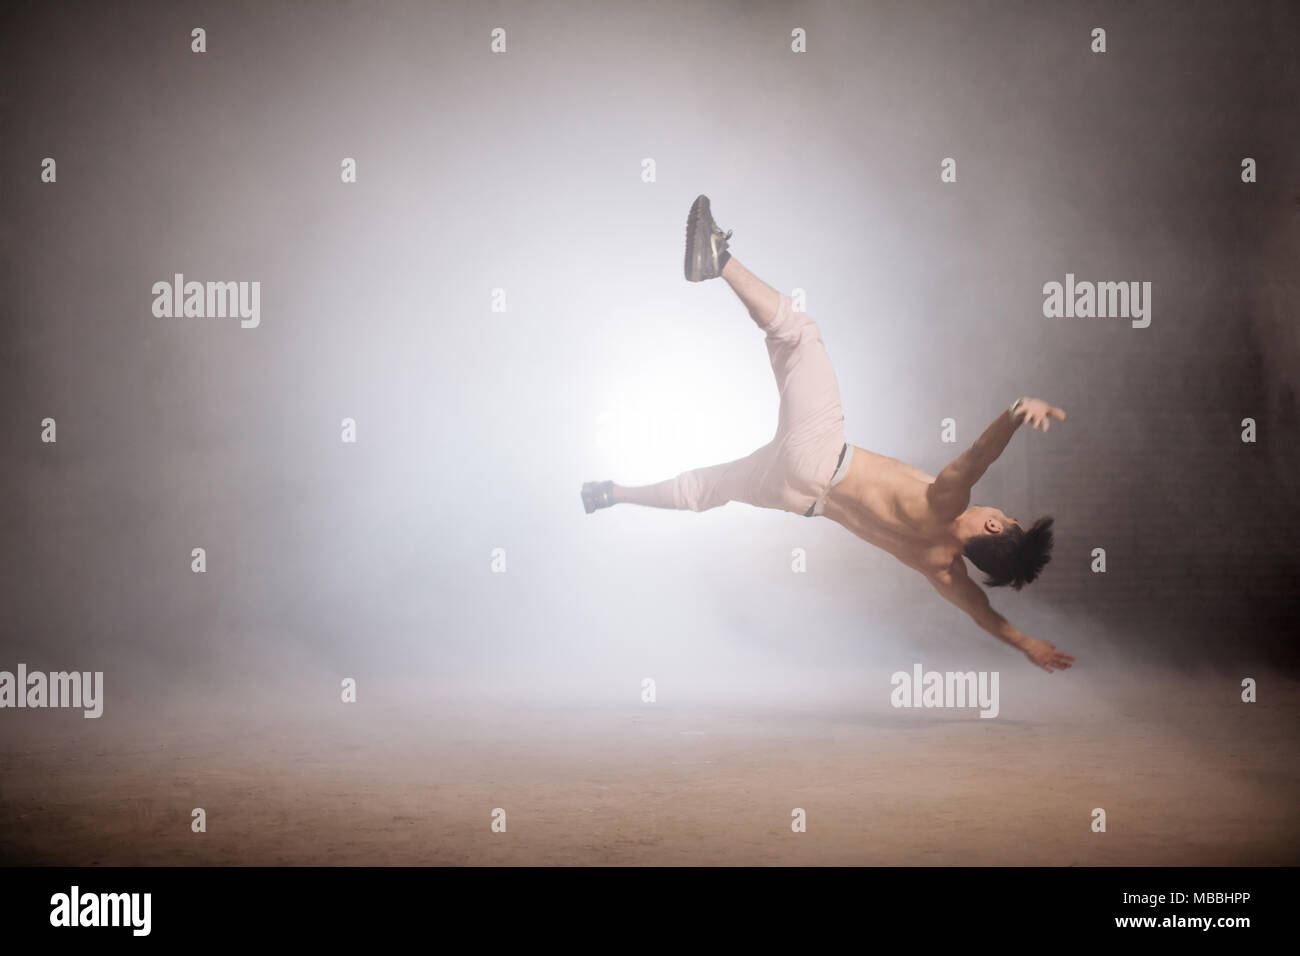 Sportivi asiatici è caduta a terra mentre facendo stunt Foto stock - Alamy